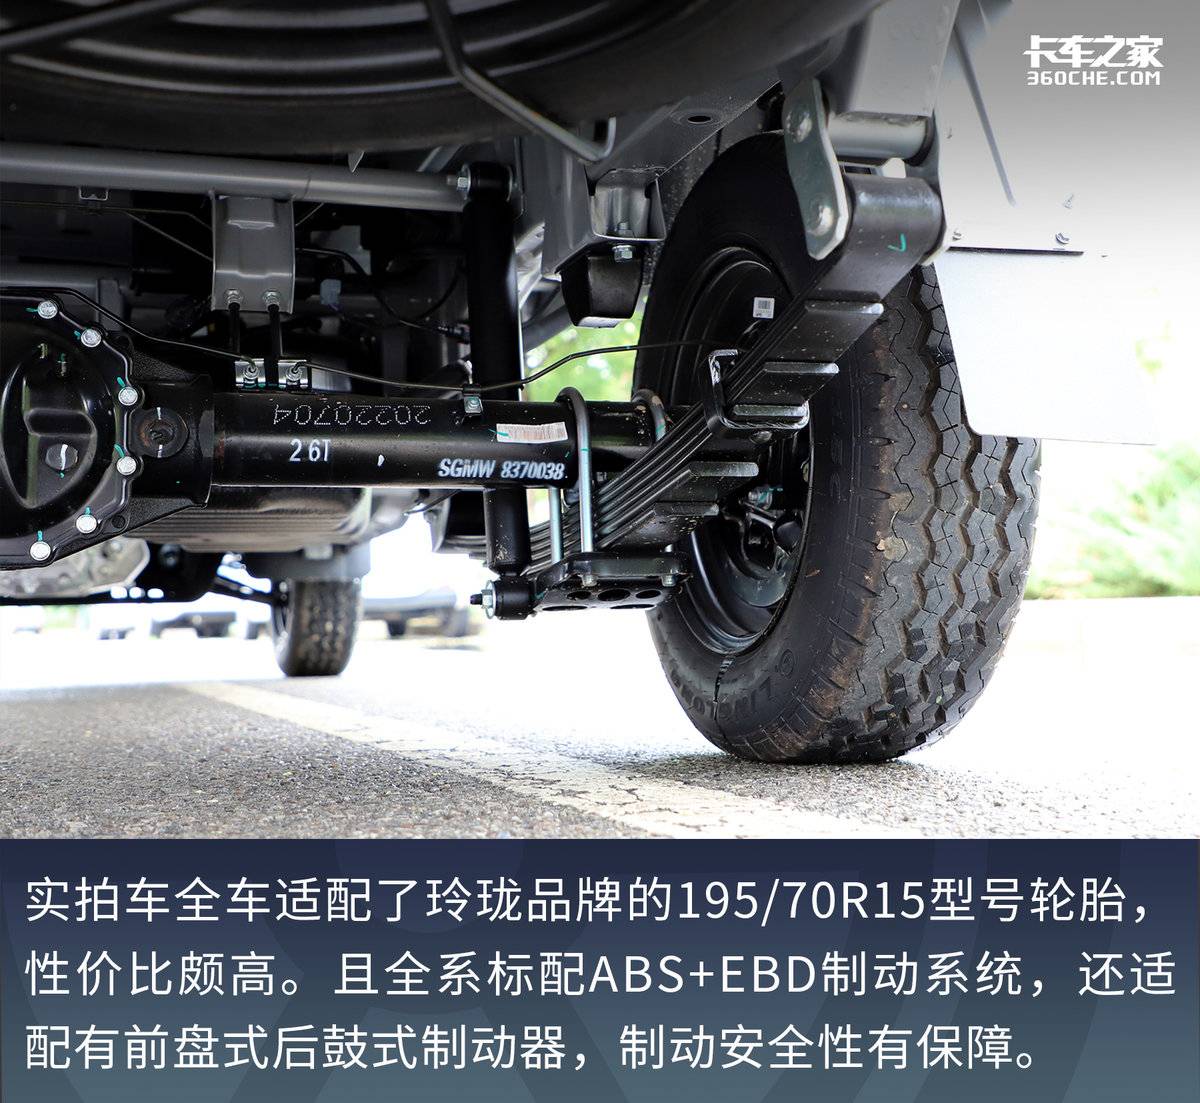 新升级尺寸更大更能装 5.28万元起售 五菱荣光新卡加长版标配倒车雷达